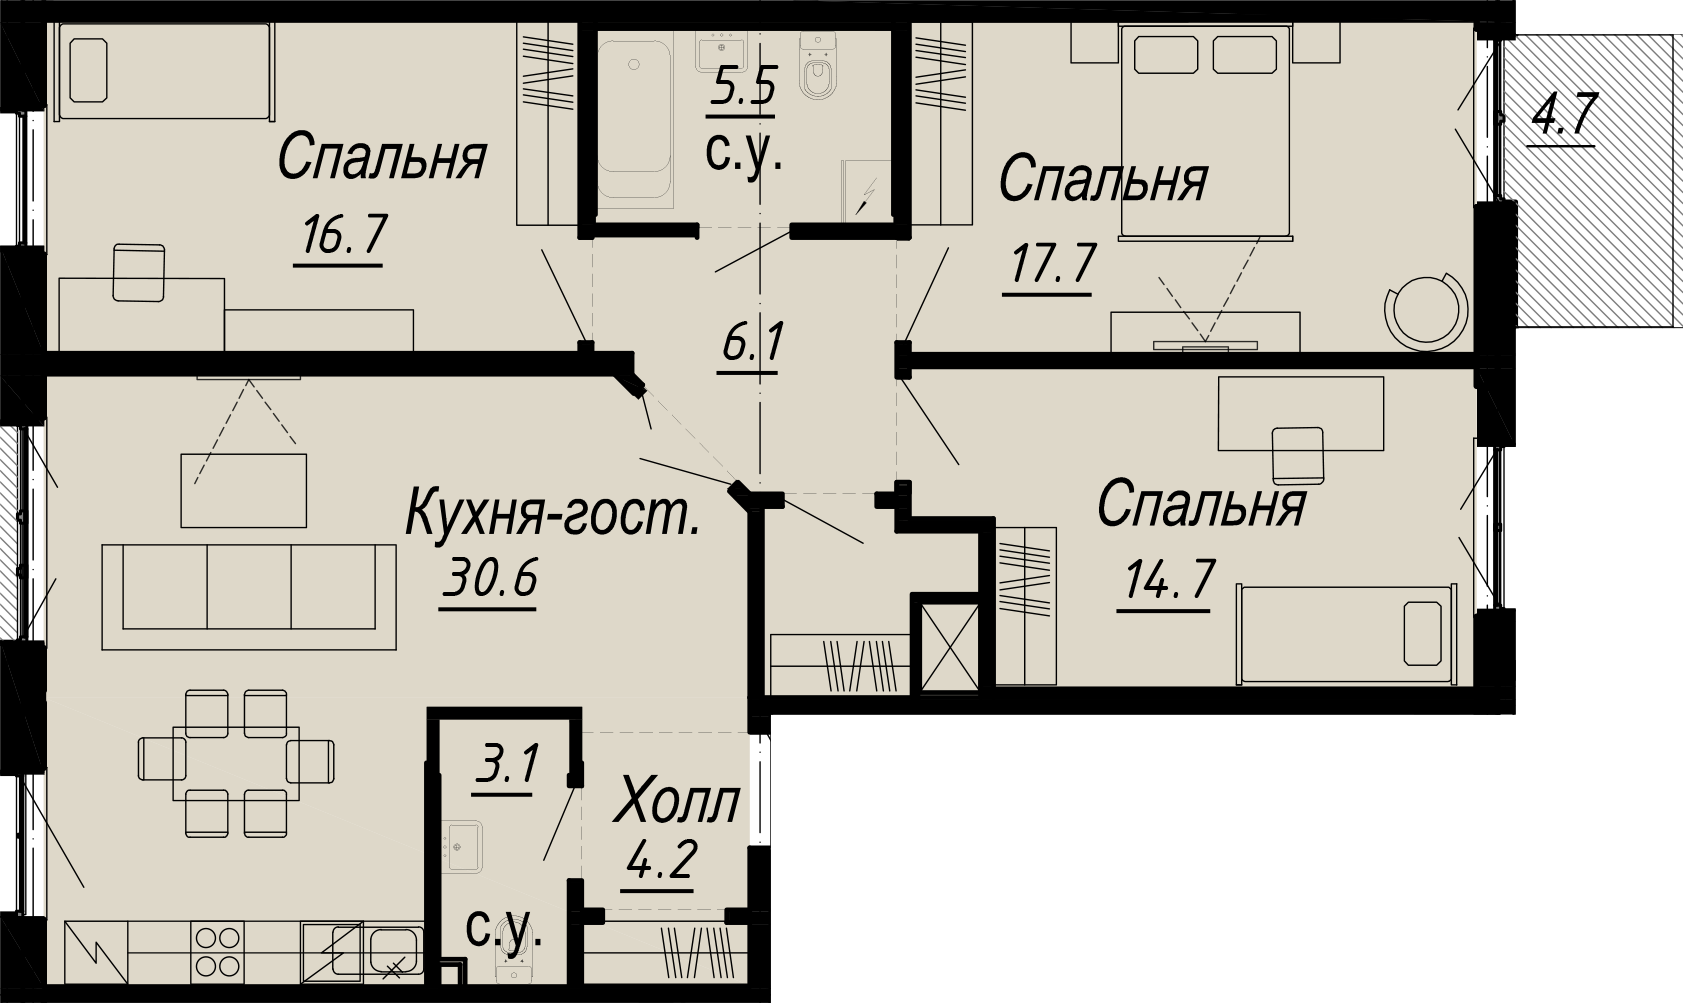 3-комнатная квартира  №25-6 в Meltzer Hall: 107.12 м², этаж 6 - купить в Санкт-Петербурге